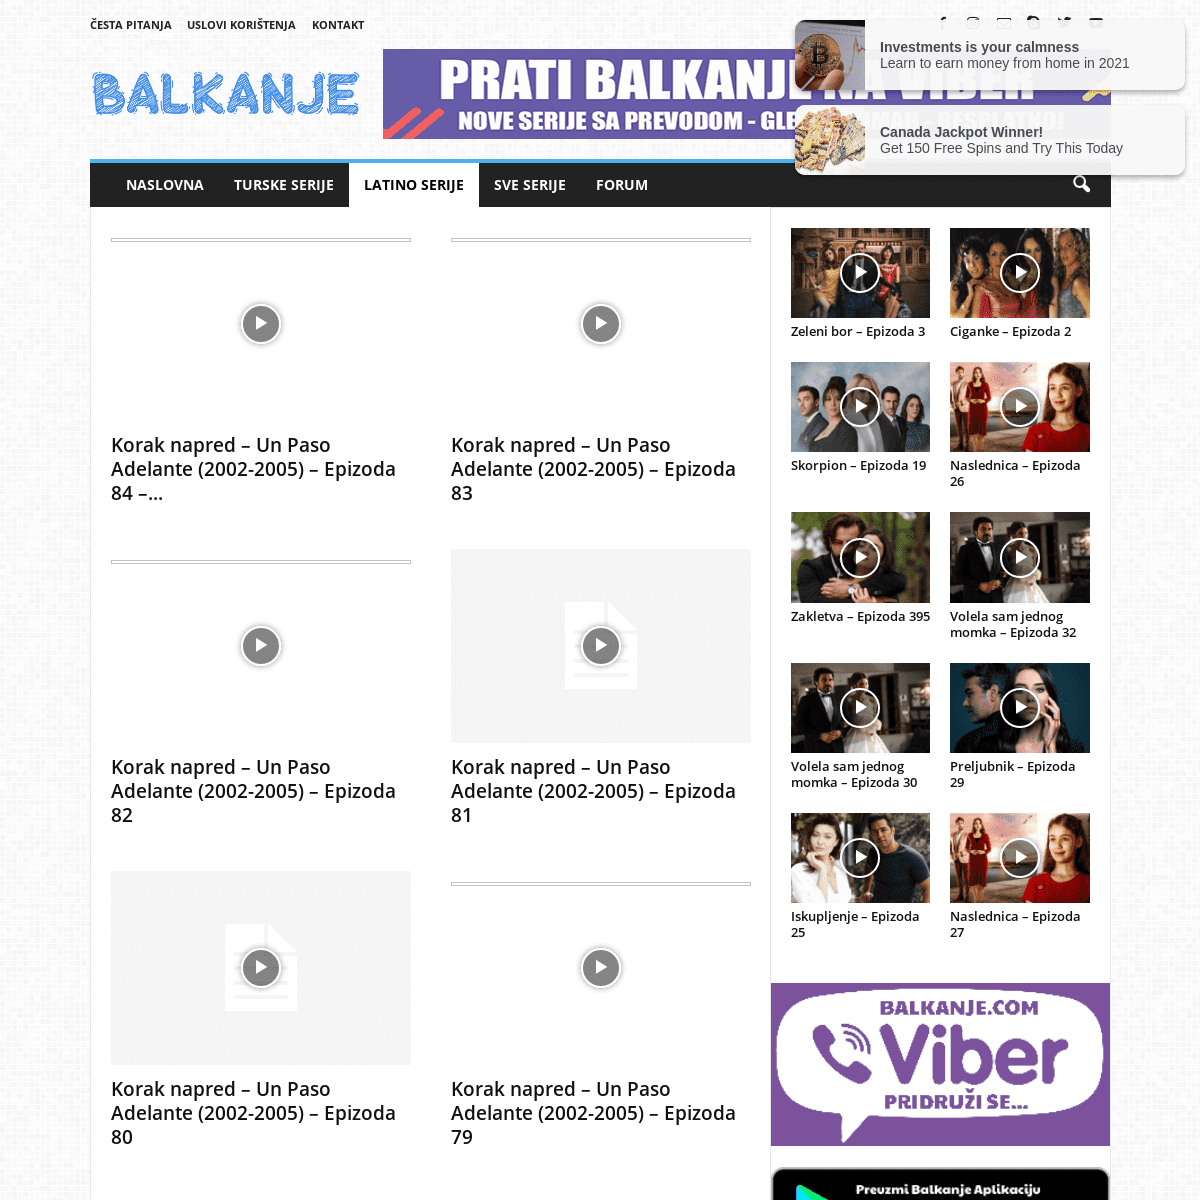 A complete backup of https://balkanje.com/latino-serije/korak-napred-2002-2005/